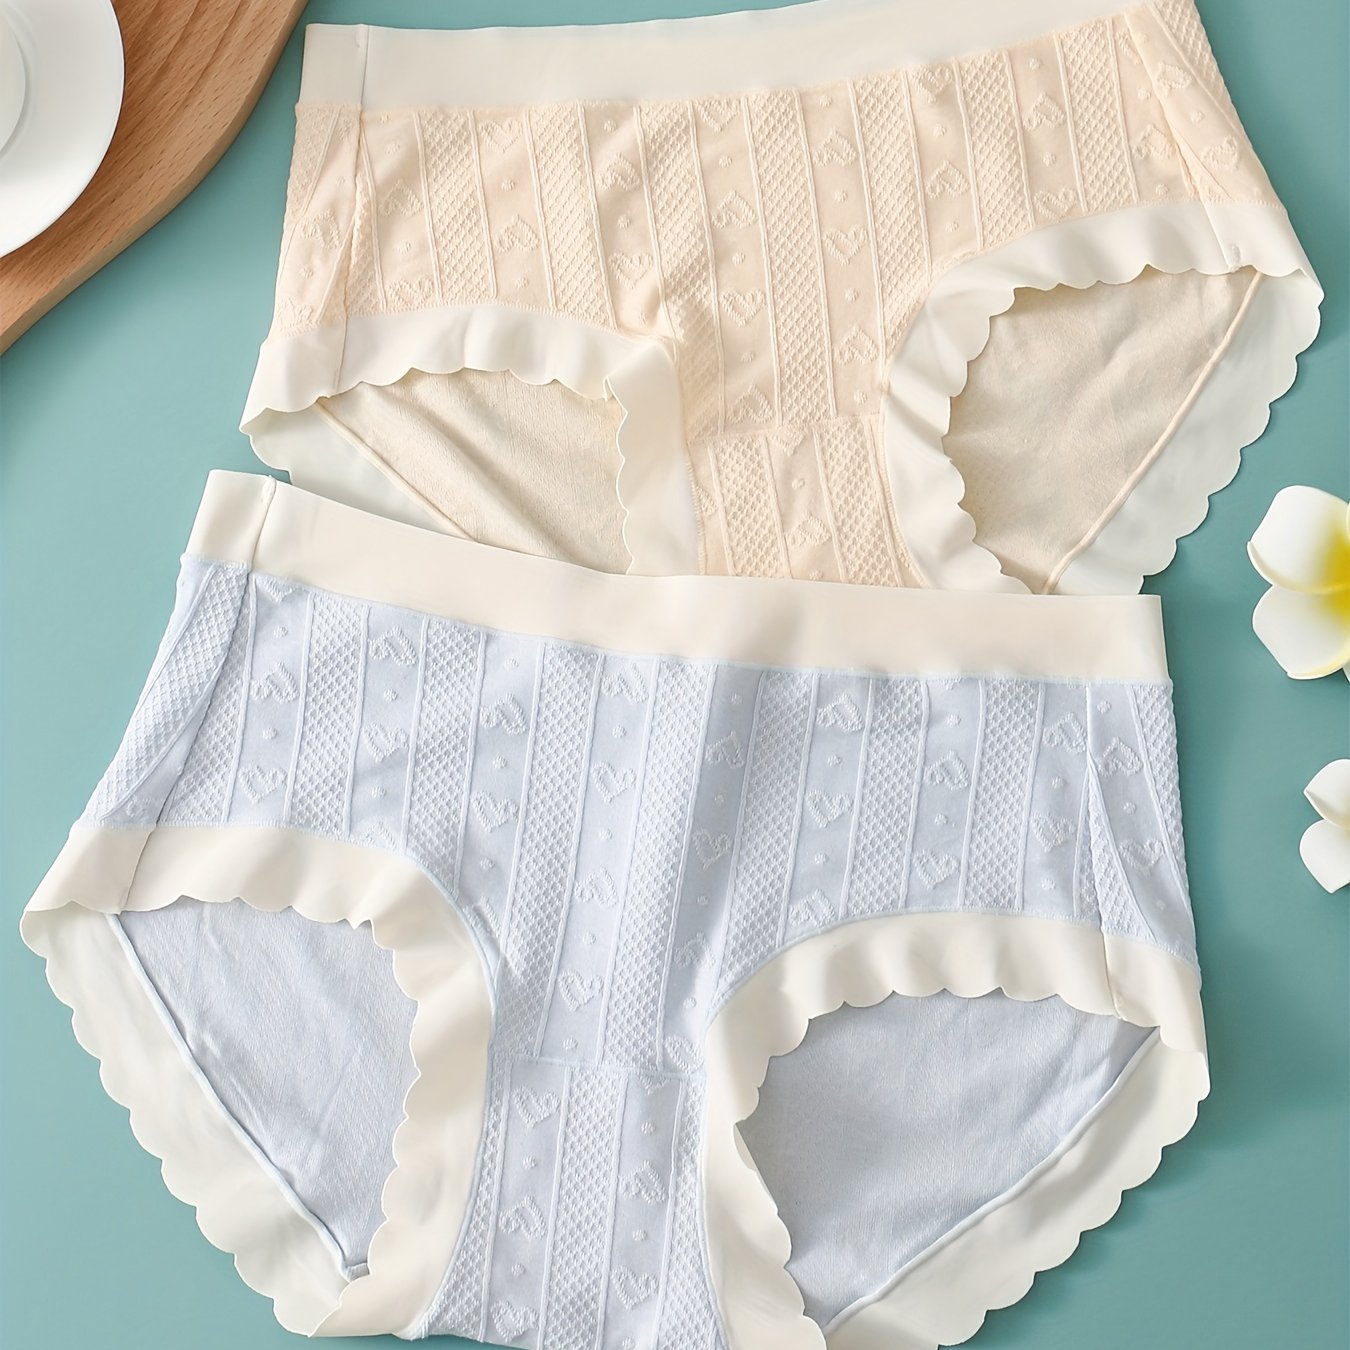 2 Pack Teenage Girls' Underwear Japanese-style Cute Panties Seamless Sweet  Heart Pattern Light Color Panties For 10-18 Girls